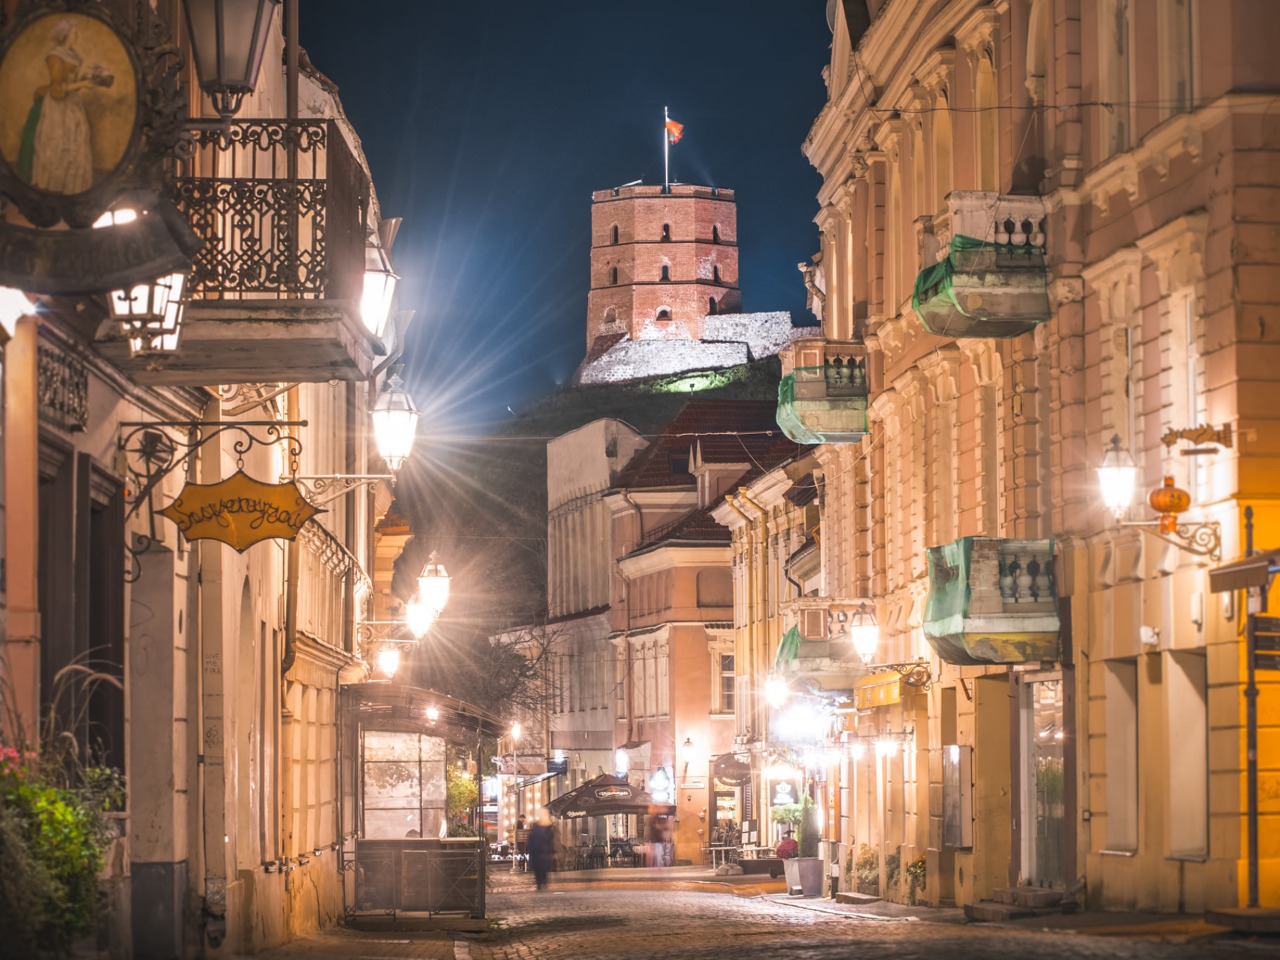 Пешком по Старому Вильнюсу: за наследием ЮНЕСКО | Цена 64€, отзывы, описание экскурсии